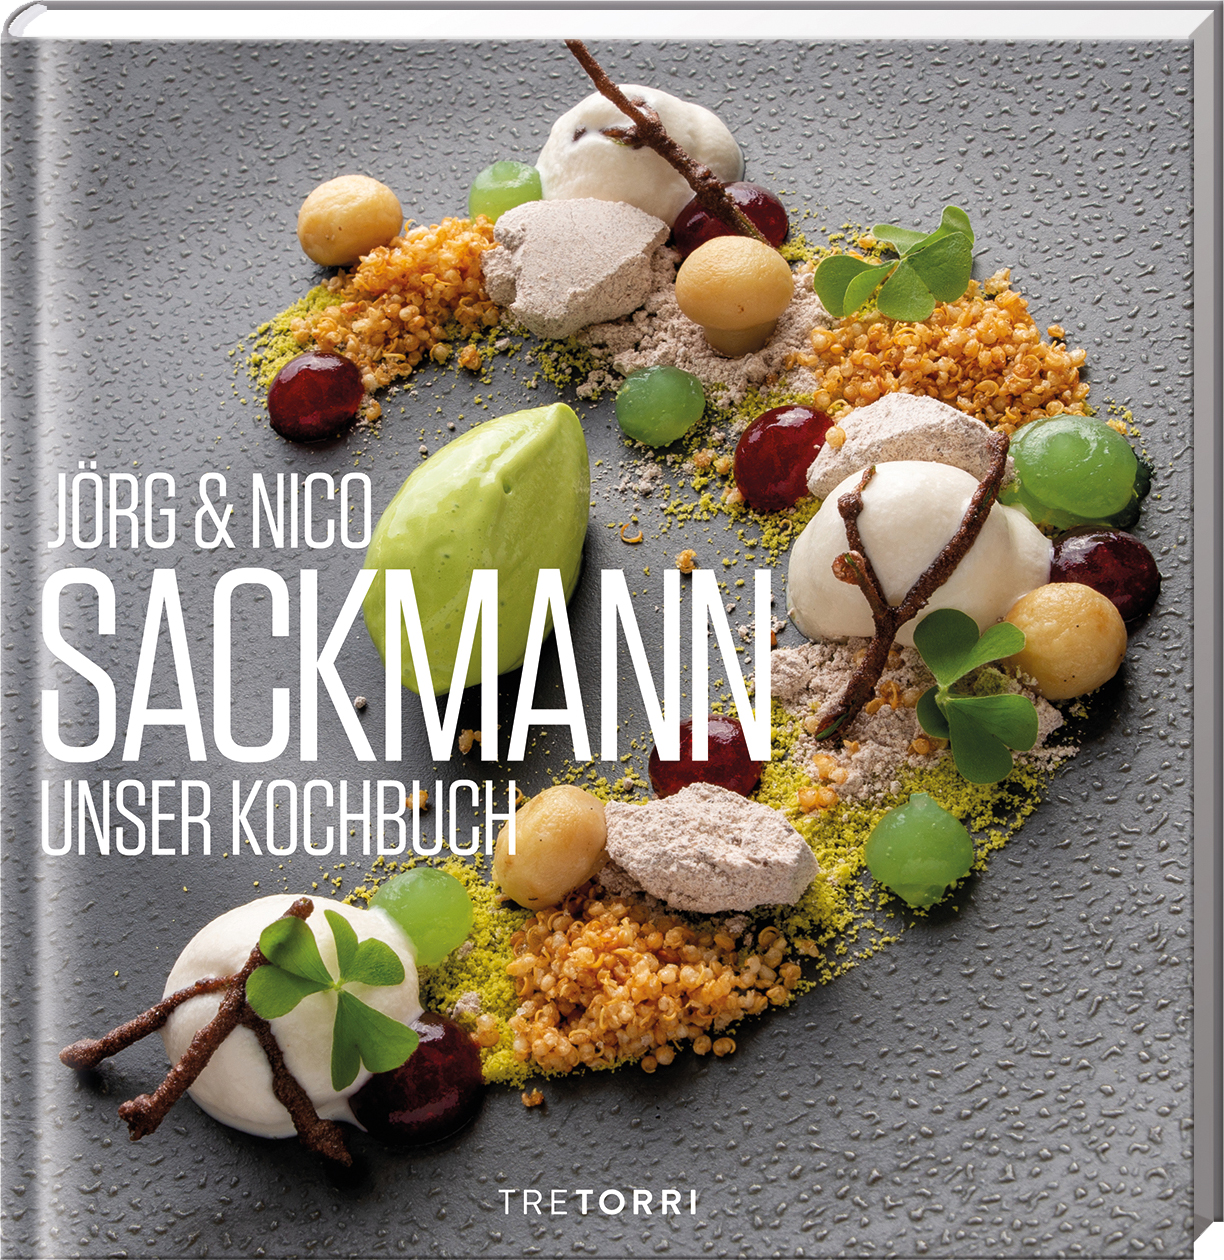 SACKMANN, Unser Kochbuch